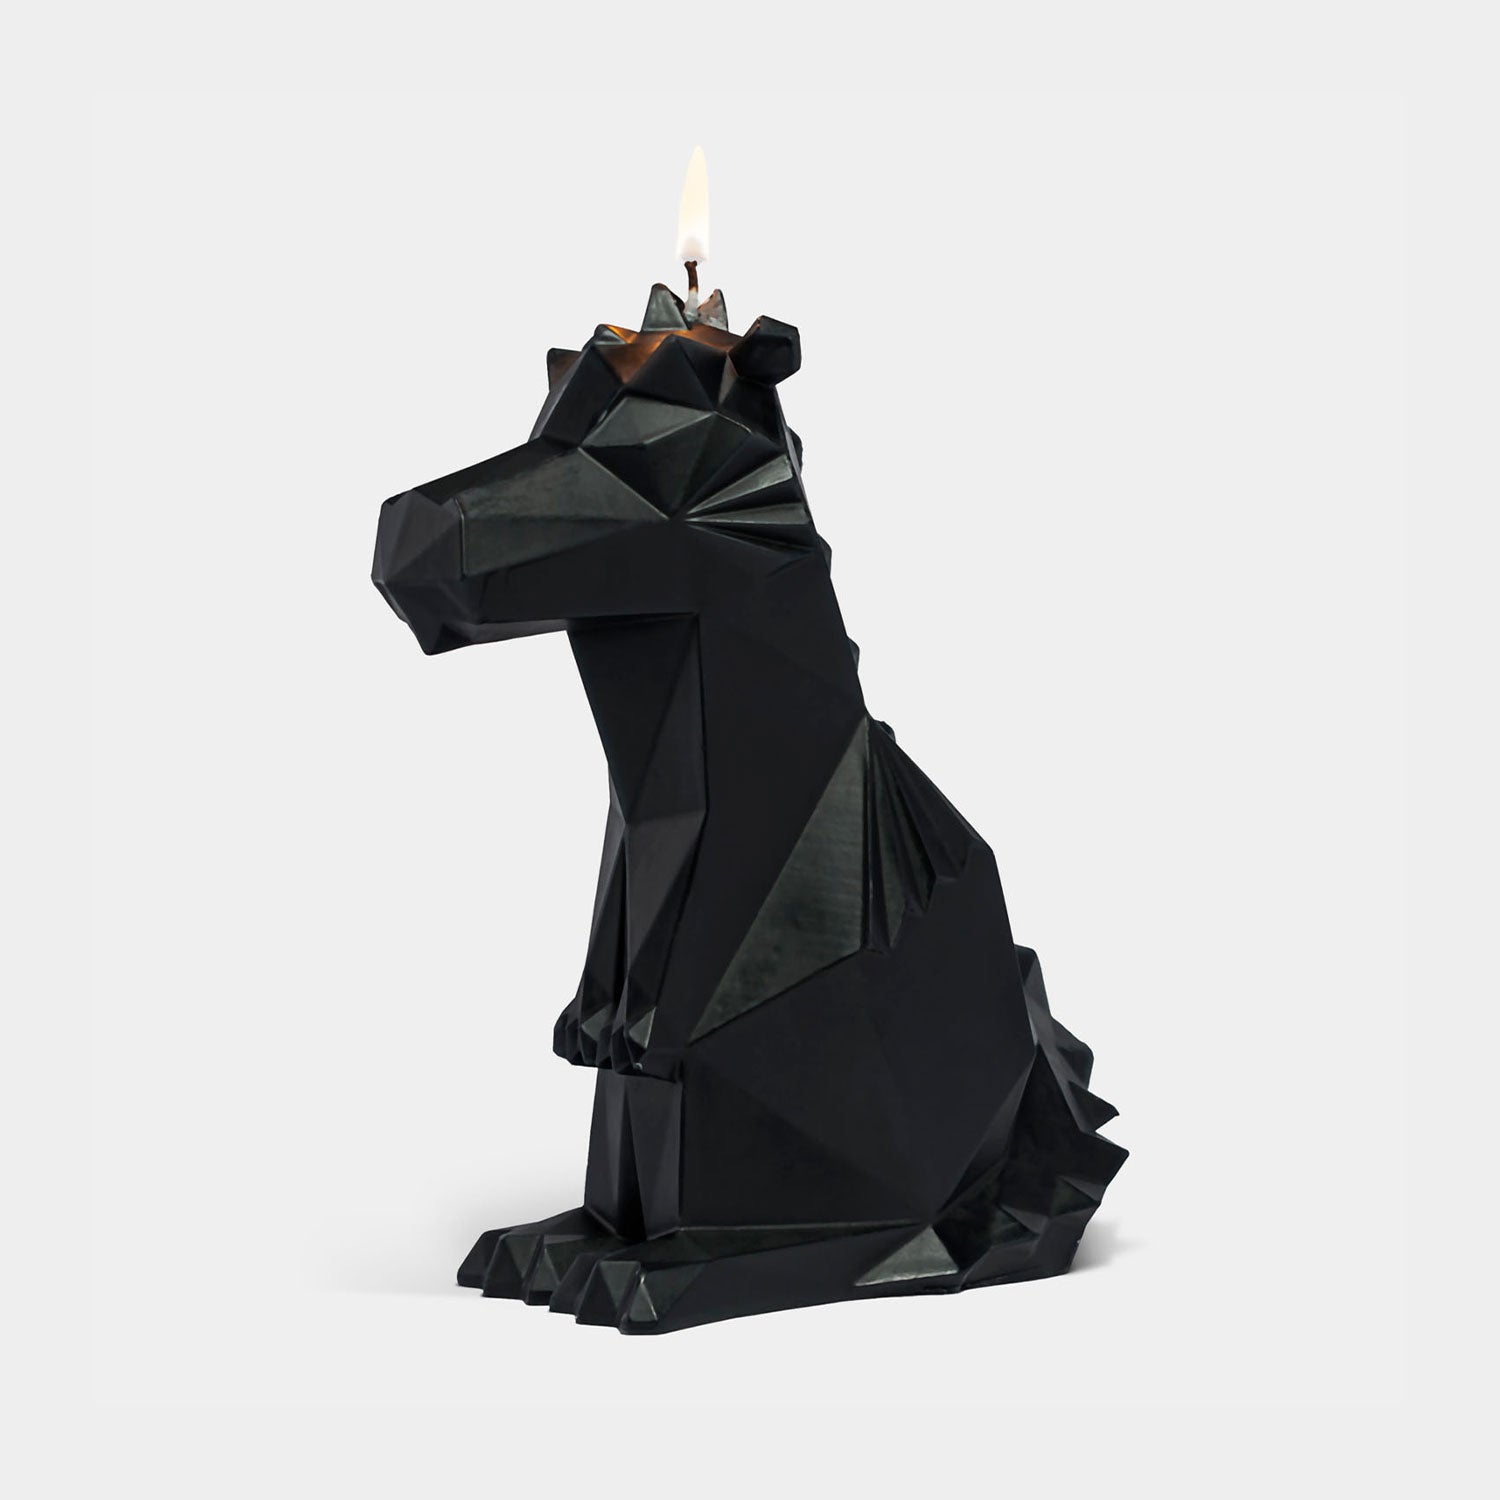 PyroPet Dreki Dragon Candle - Black